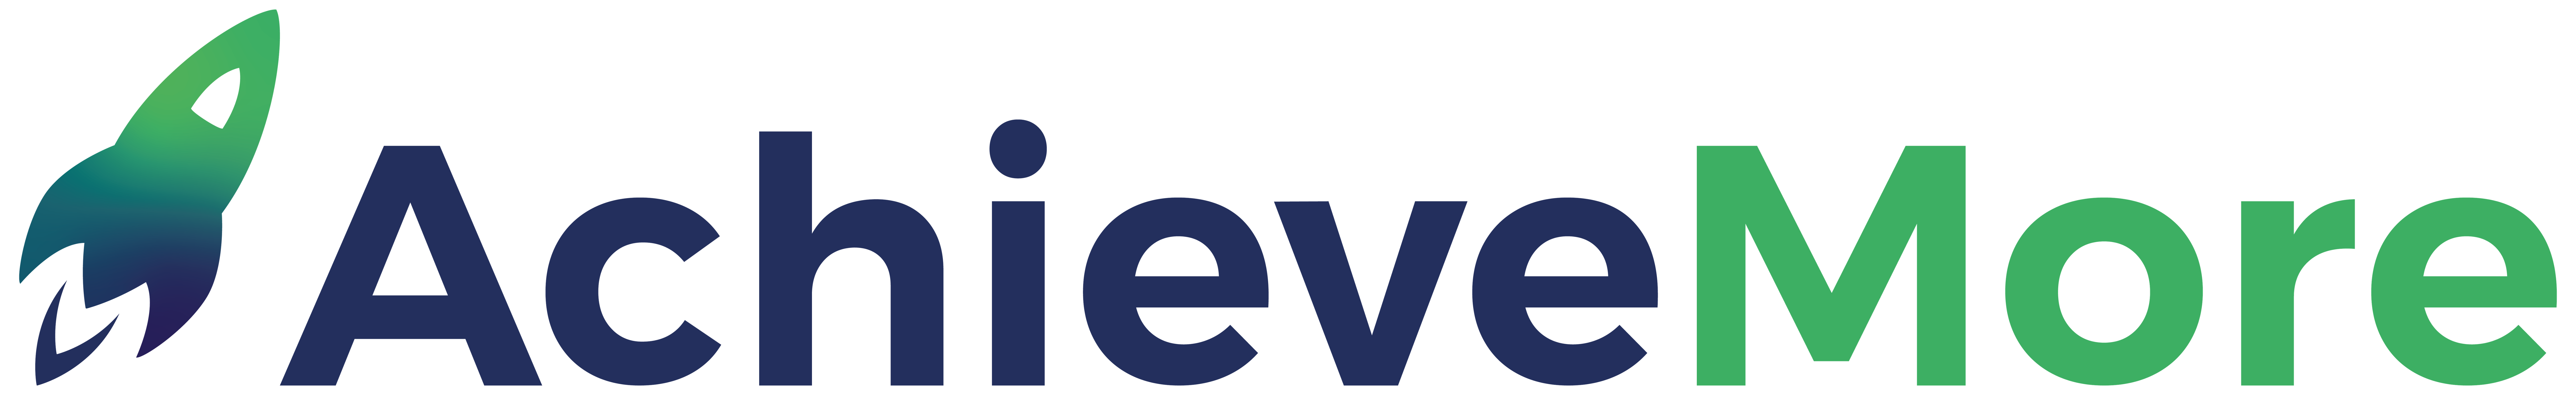 Achievemore Logo Color - Achieve More